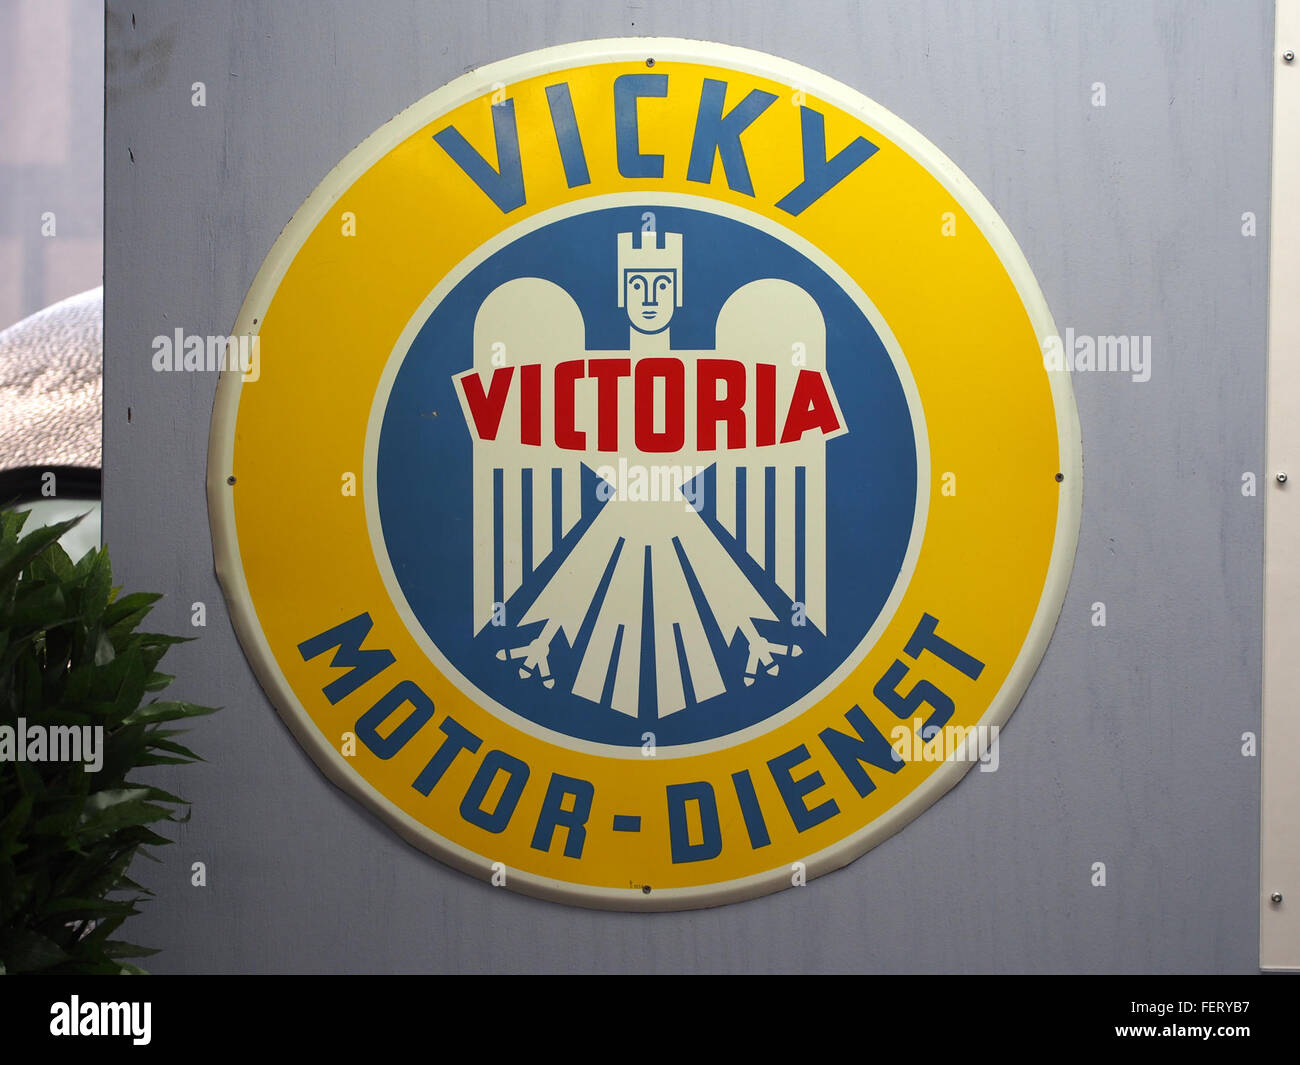 Victoria Vicky Motor-Dienst emaille werbeschild Stock Photo